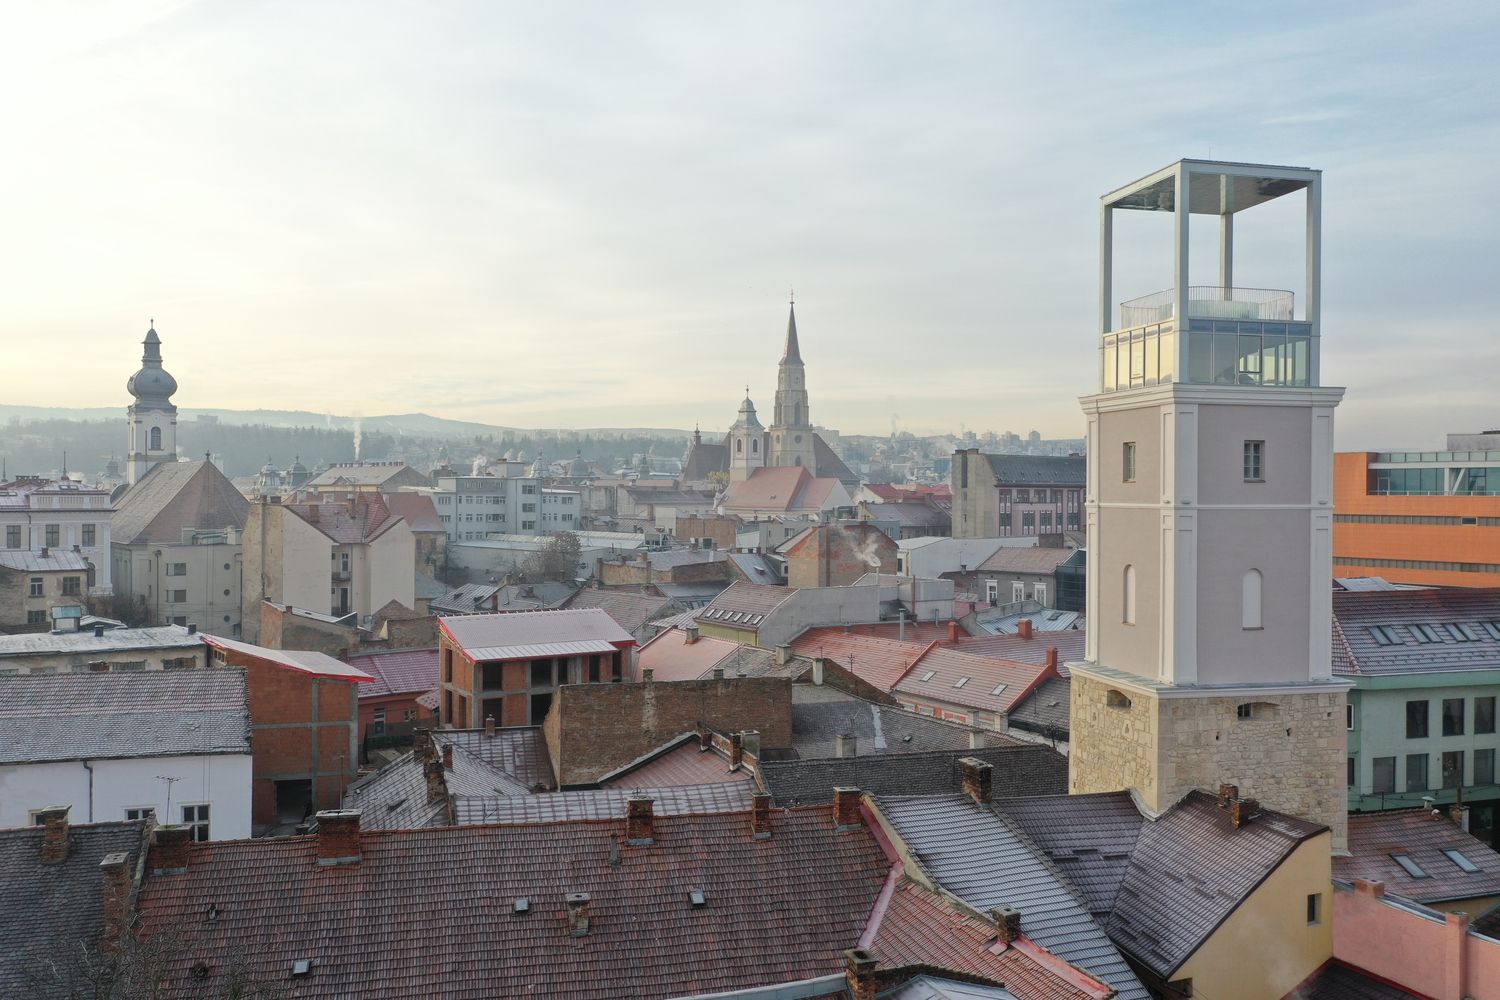 Kolozsvár történetéről mesél a felújított Tűzoltótorony épülete